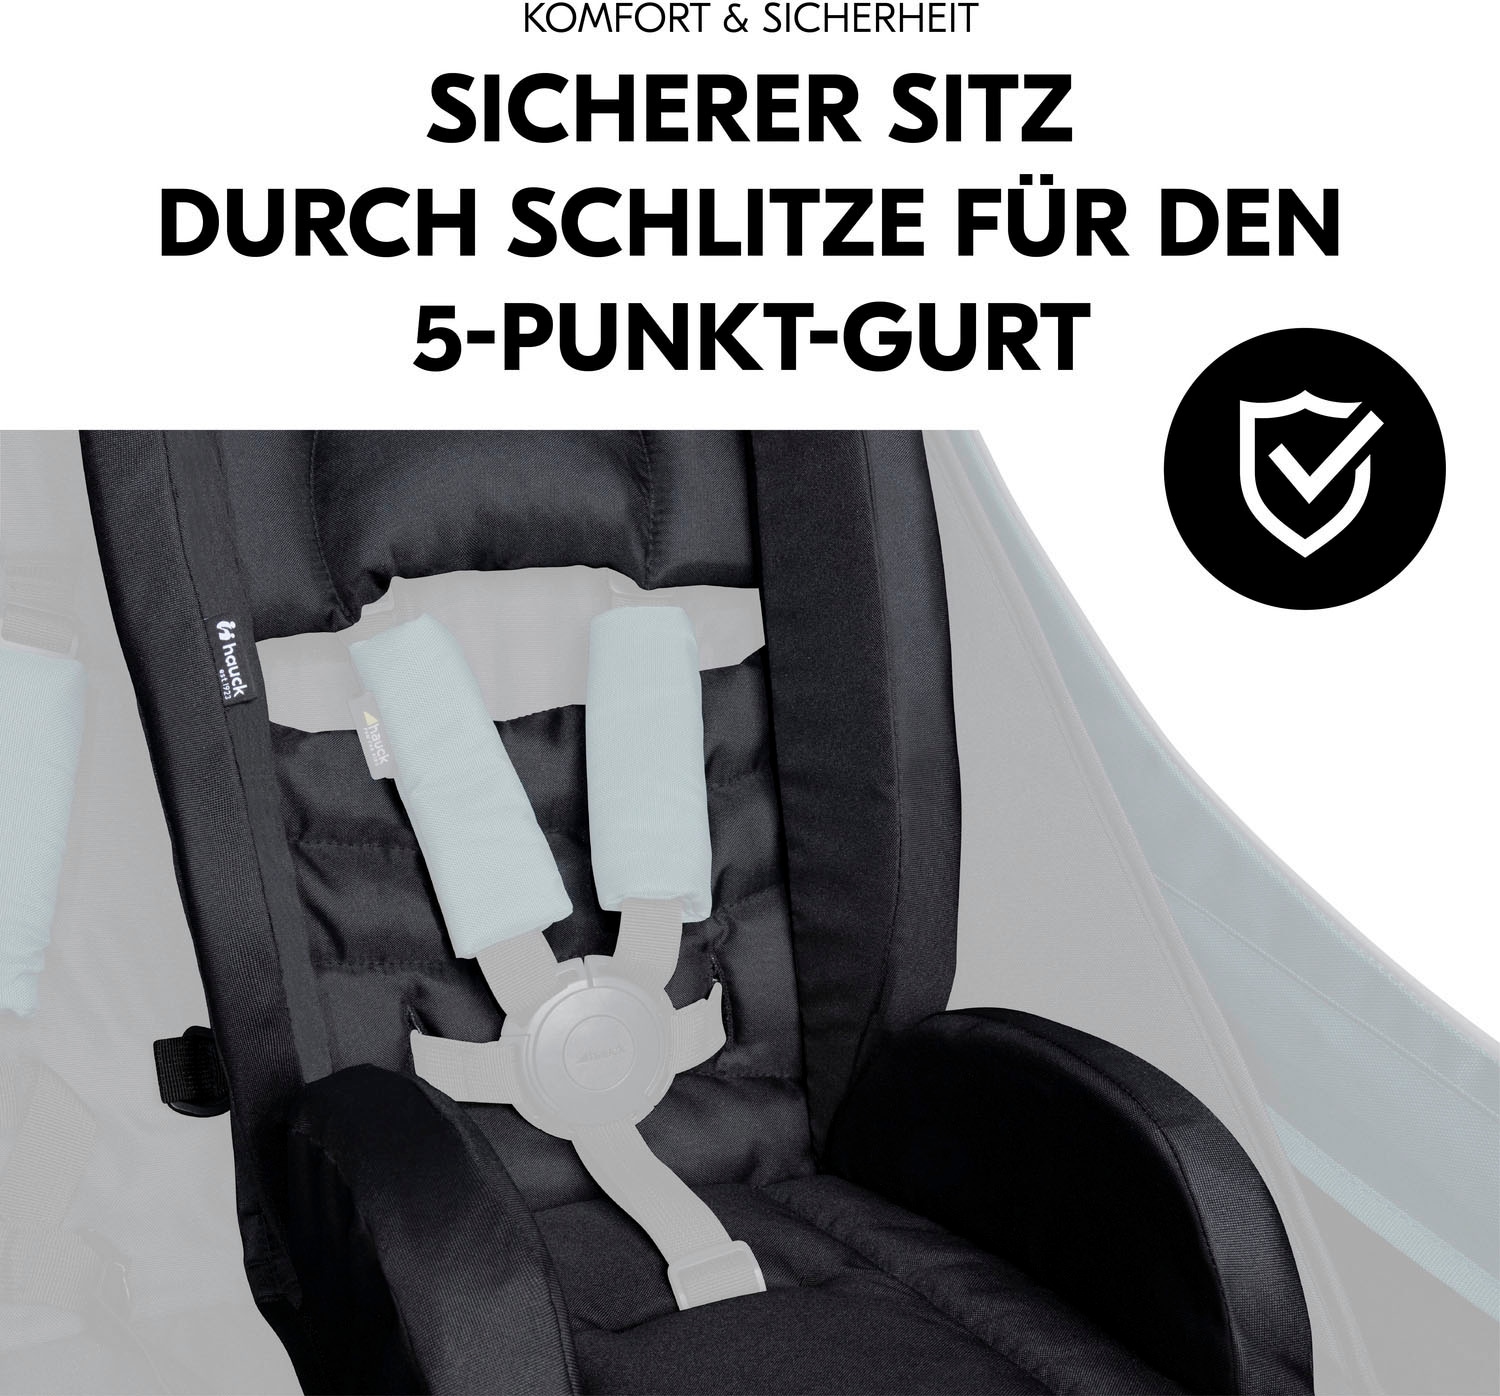 Hauck Sitzverkleinerer »Sitzverkleinerer für Fahrradanhänger, Black«, universal